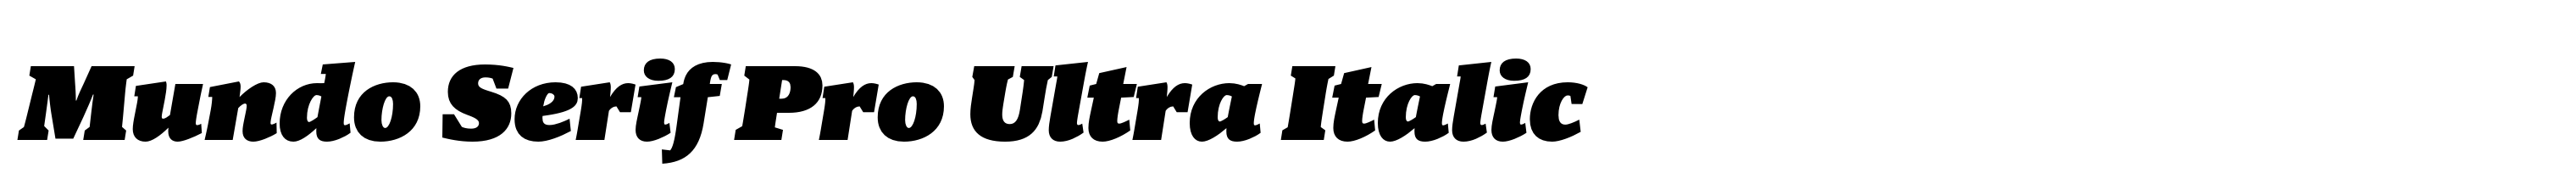 Mundo Serif Pro Ultra Italic